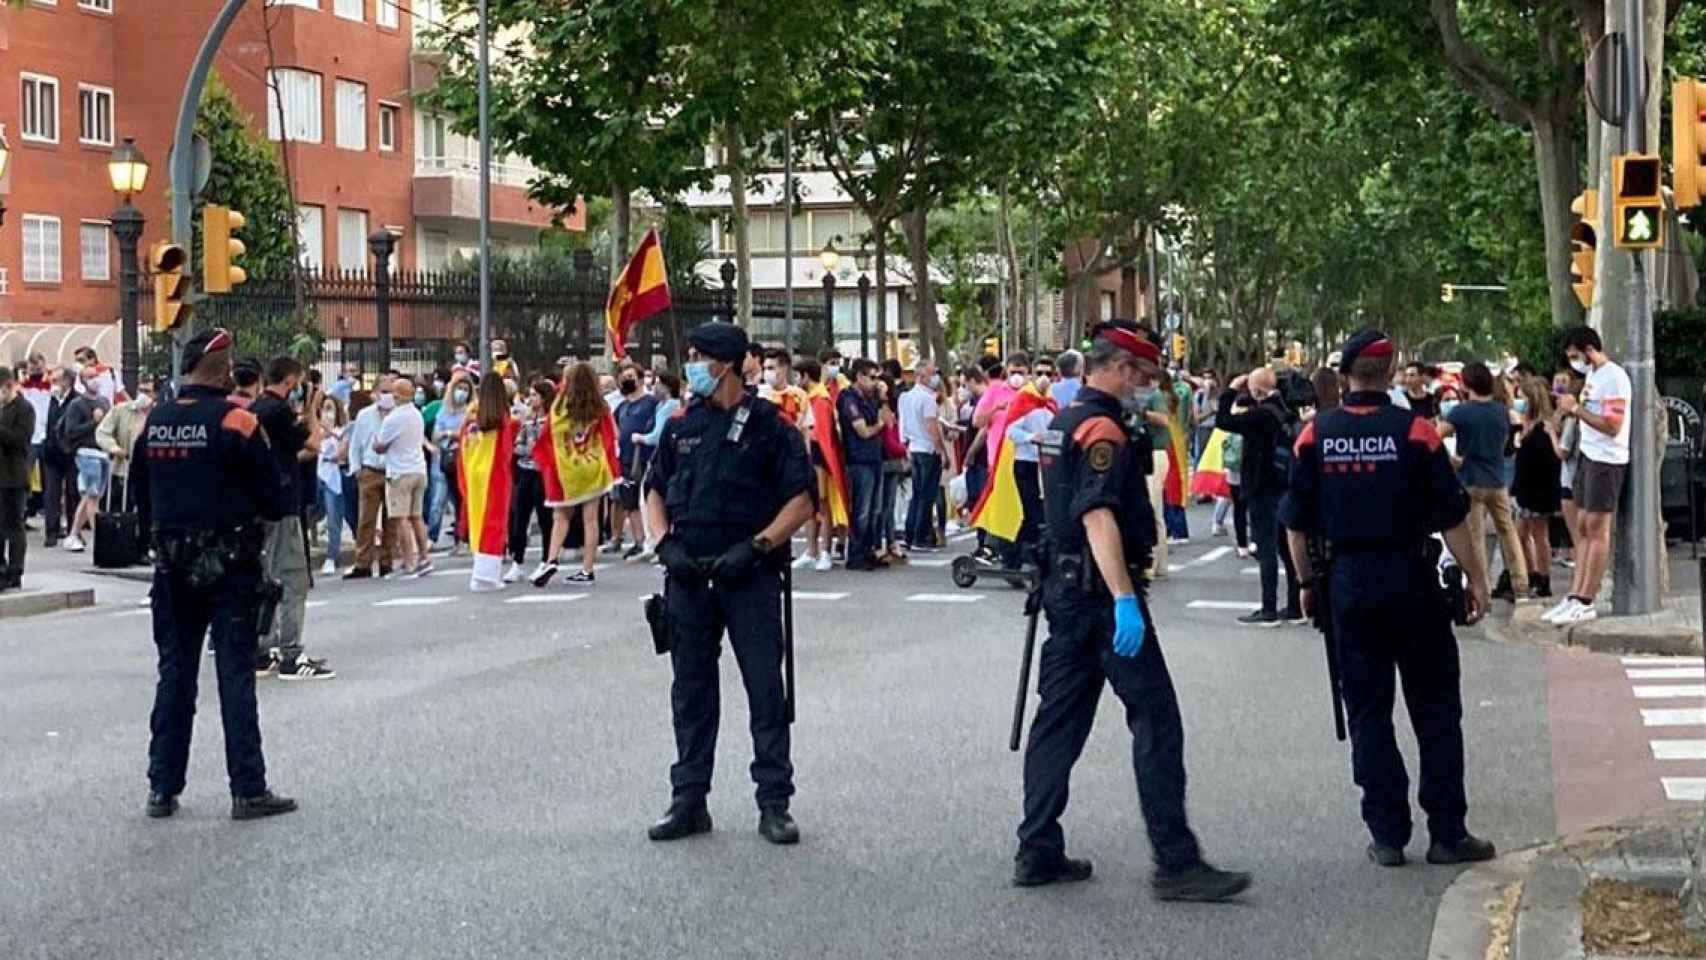 Cordón de Mossos d'Esquadra ante la protesta en Barcelona / EB